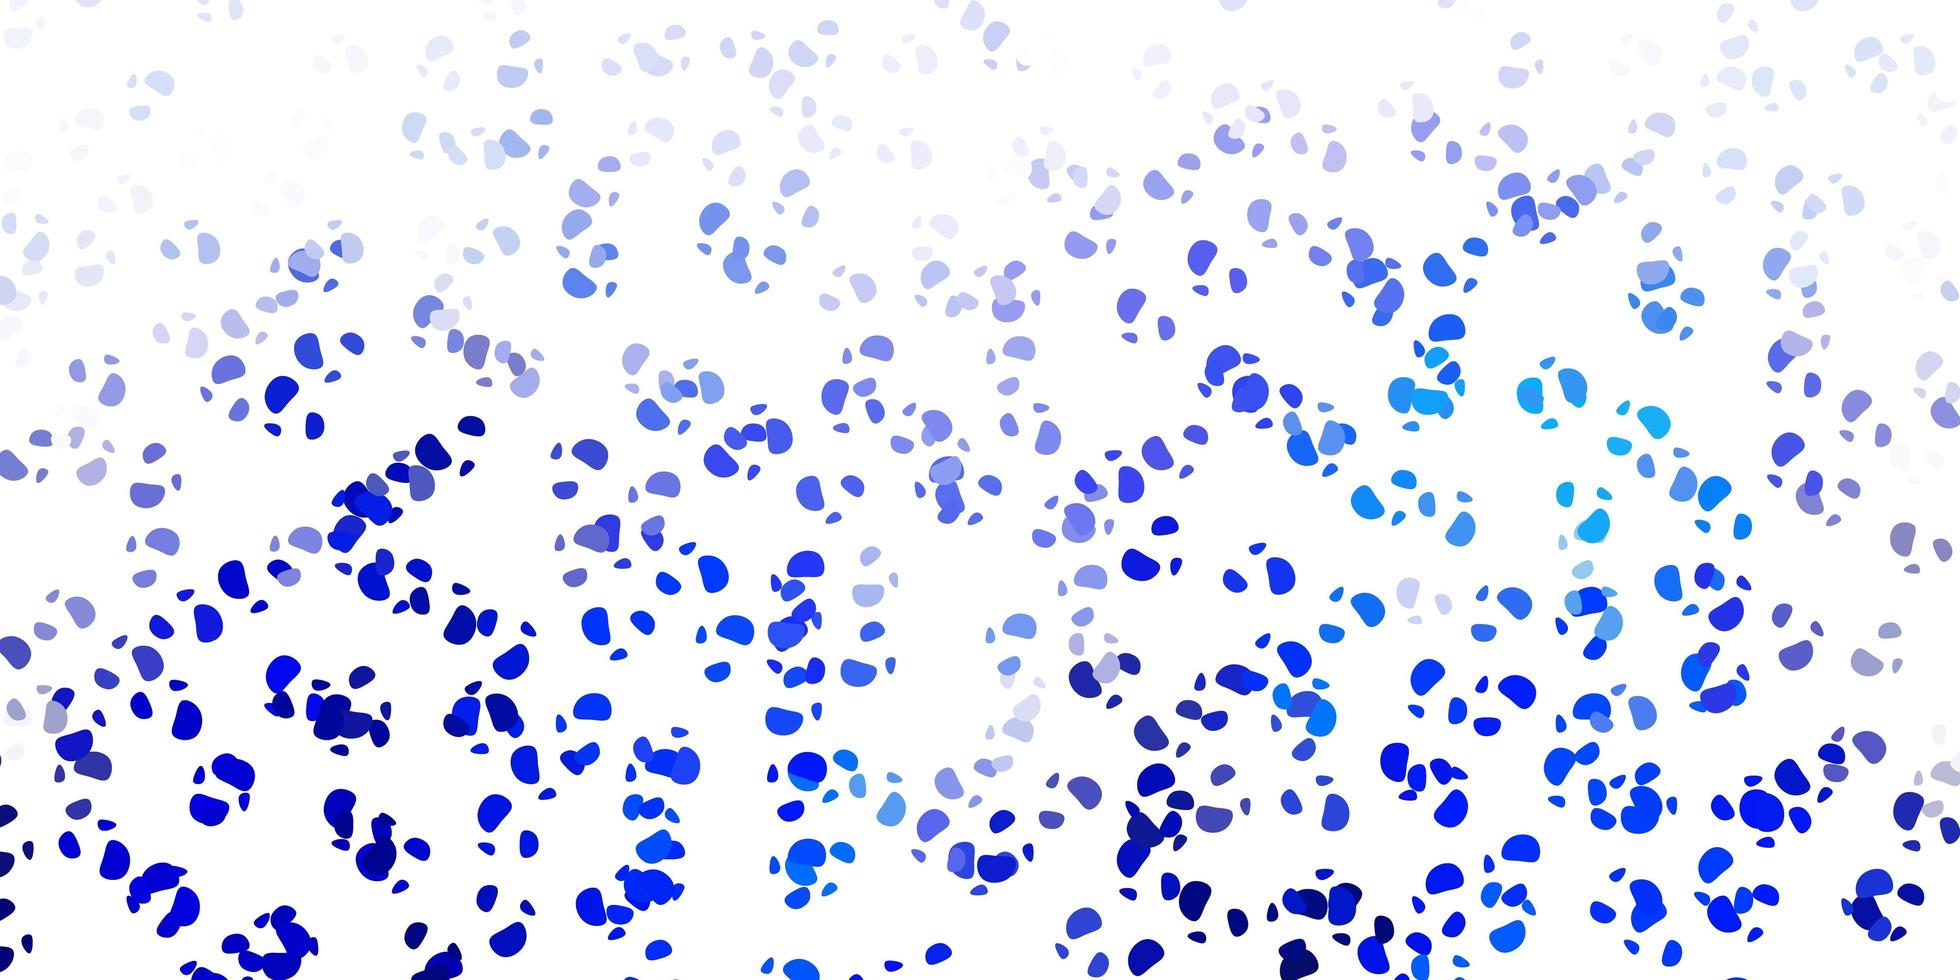 toile de fond de vecteur bleu clair avec des formes chaotiques.